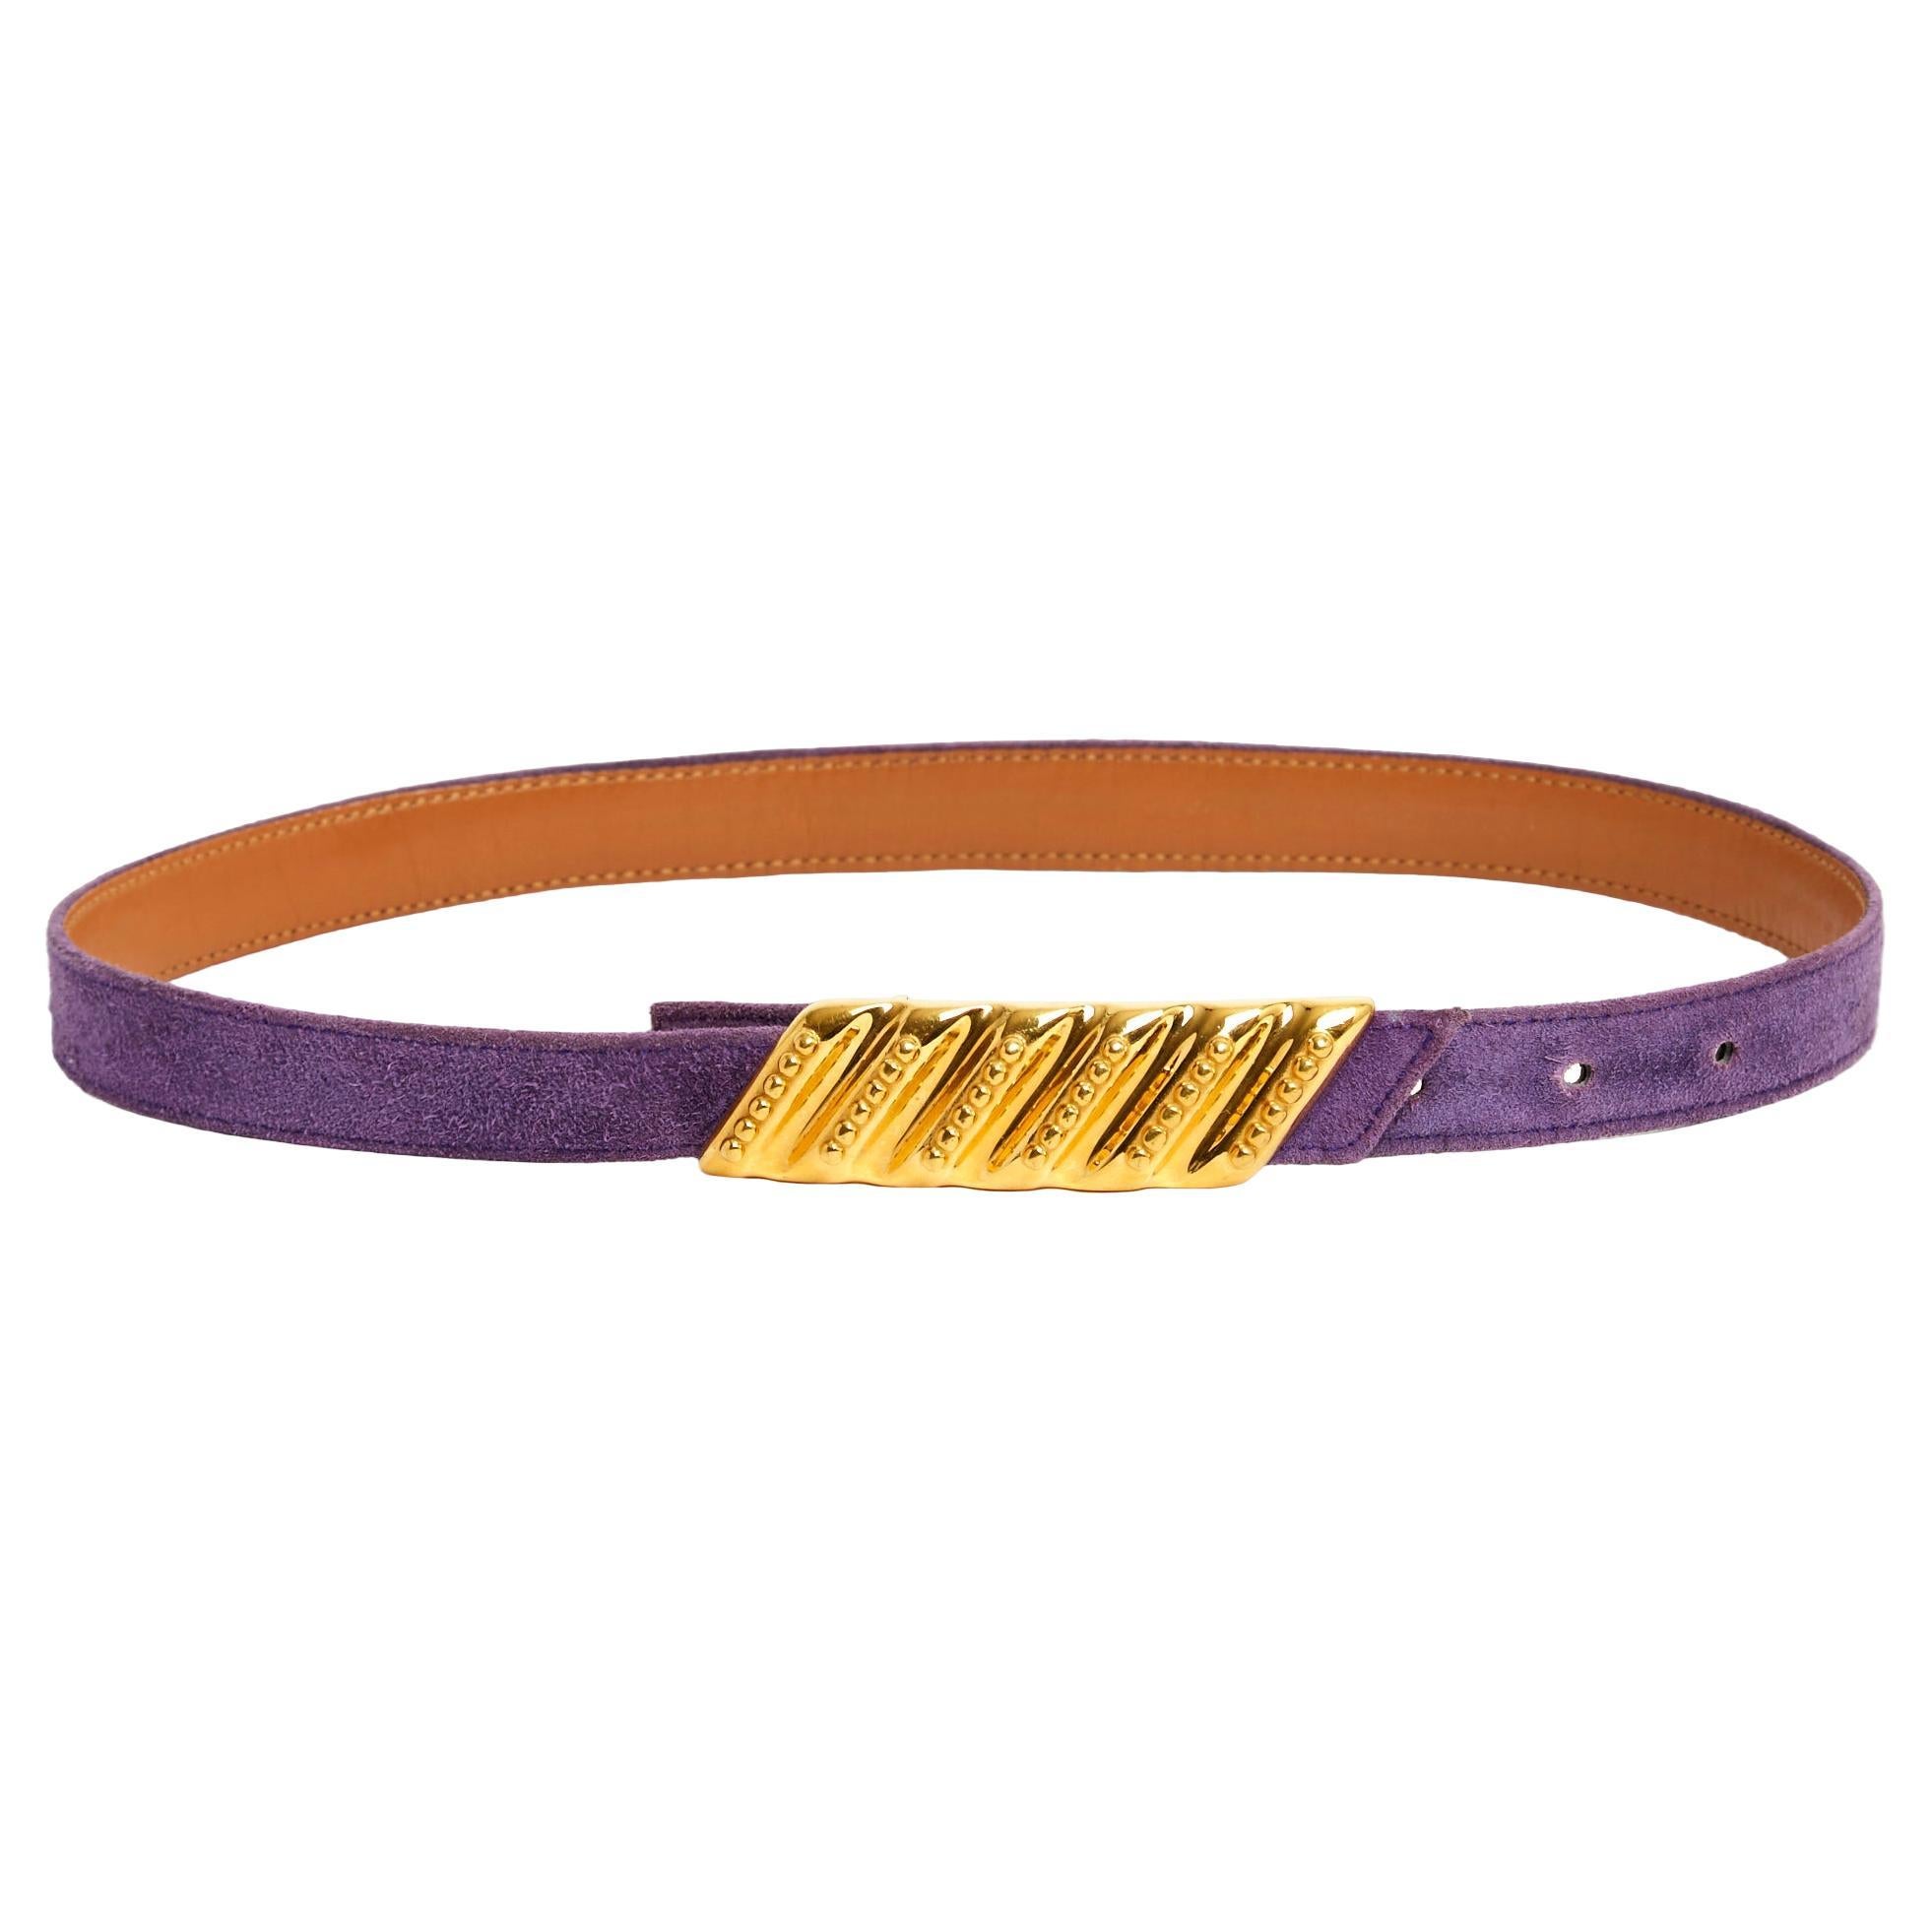 Hermes belt Purple Suede Golden Buckle S